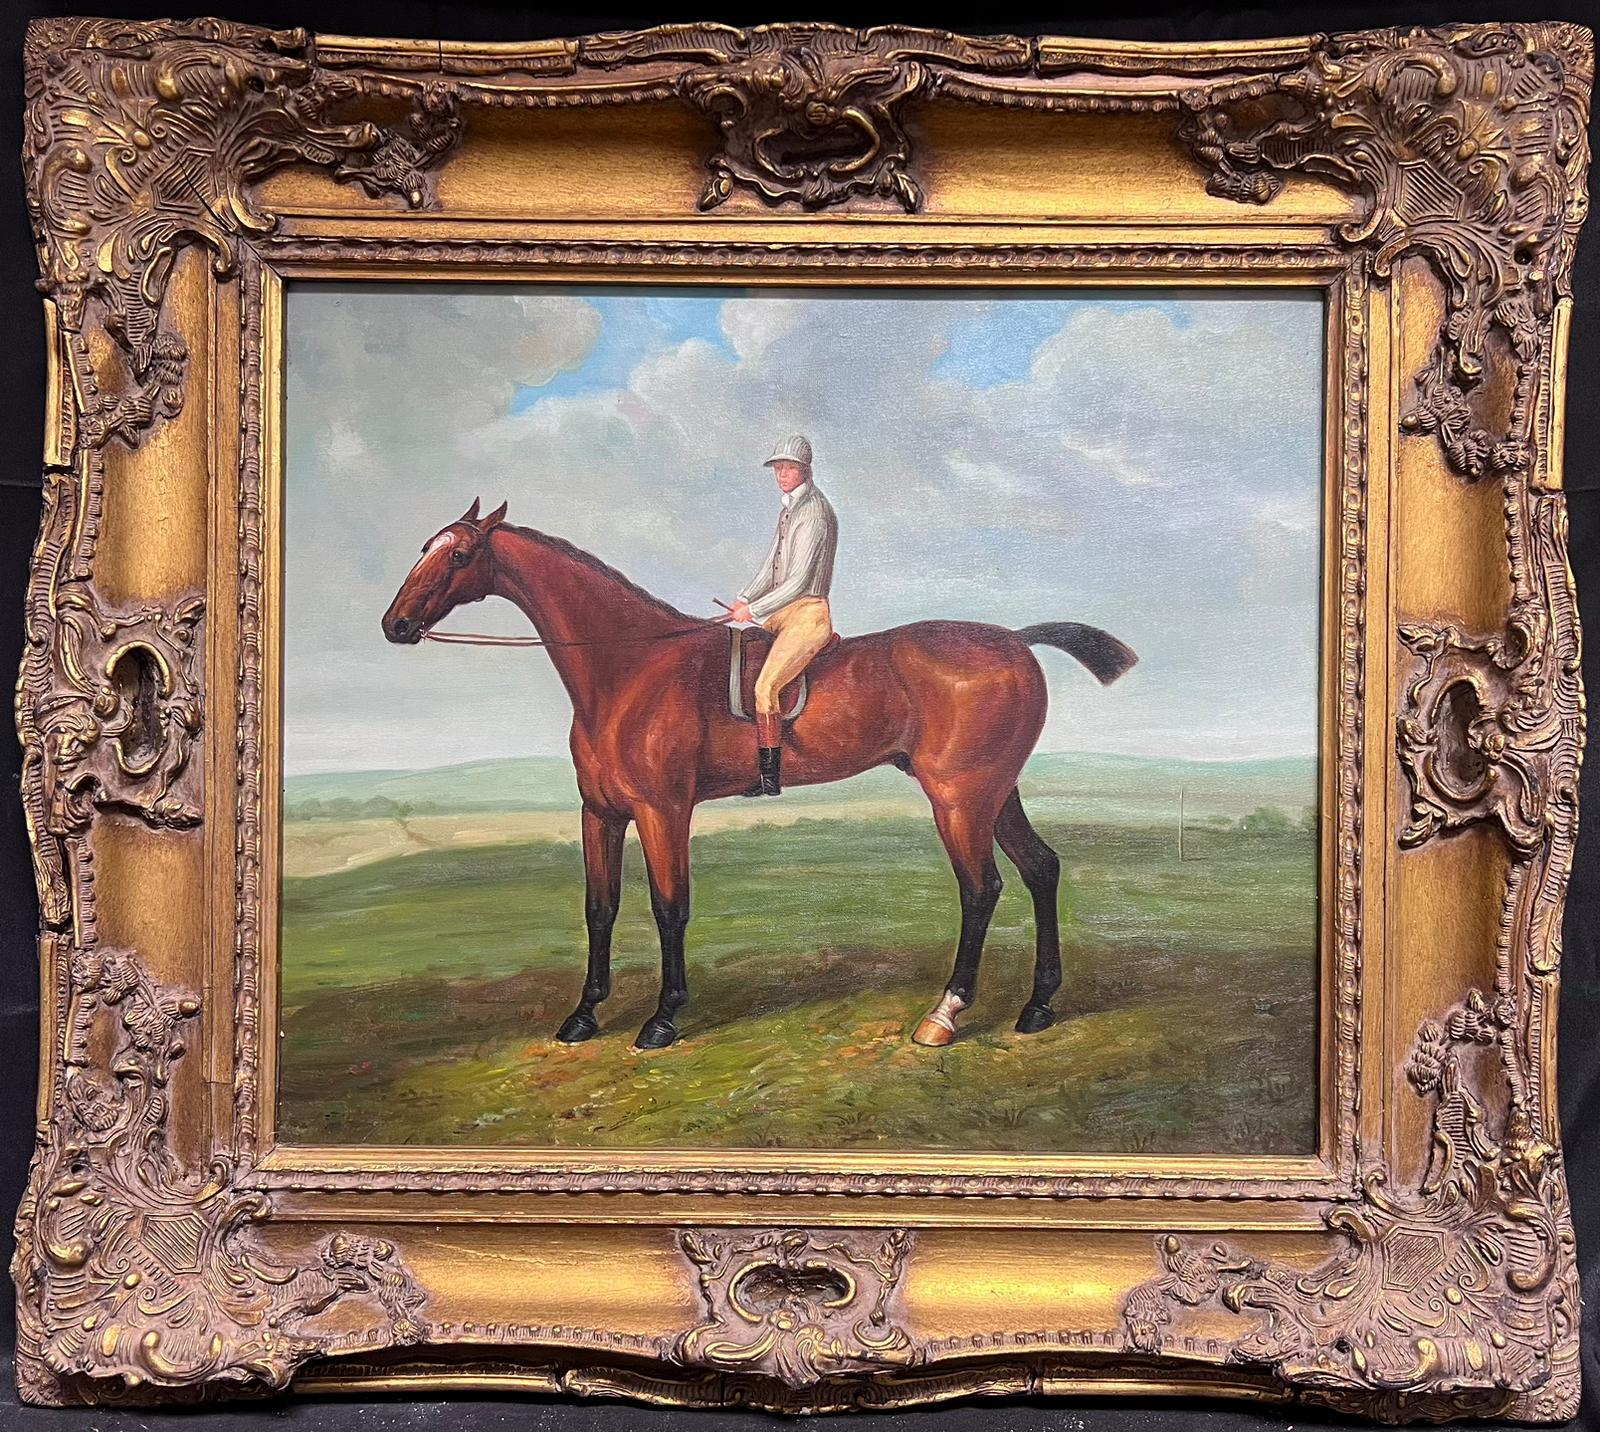 Großes britisches Sport-Ölgemälde, Jockey auf Rennpferd, in vergoldetem Landschaftsrahmen – Painting von British Sporting Art